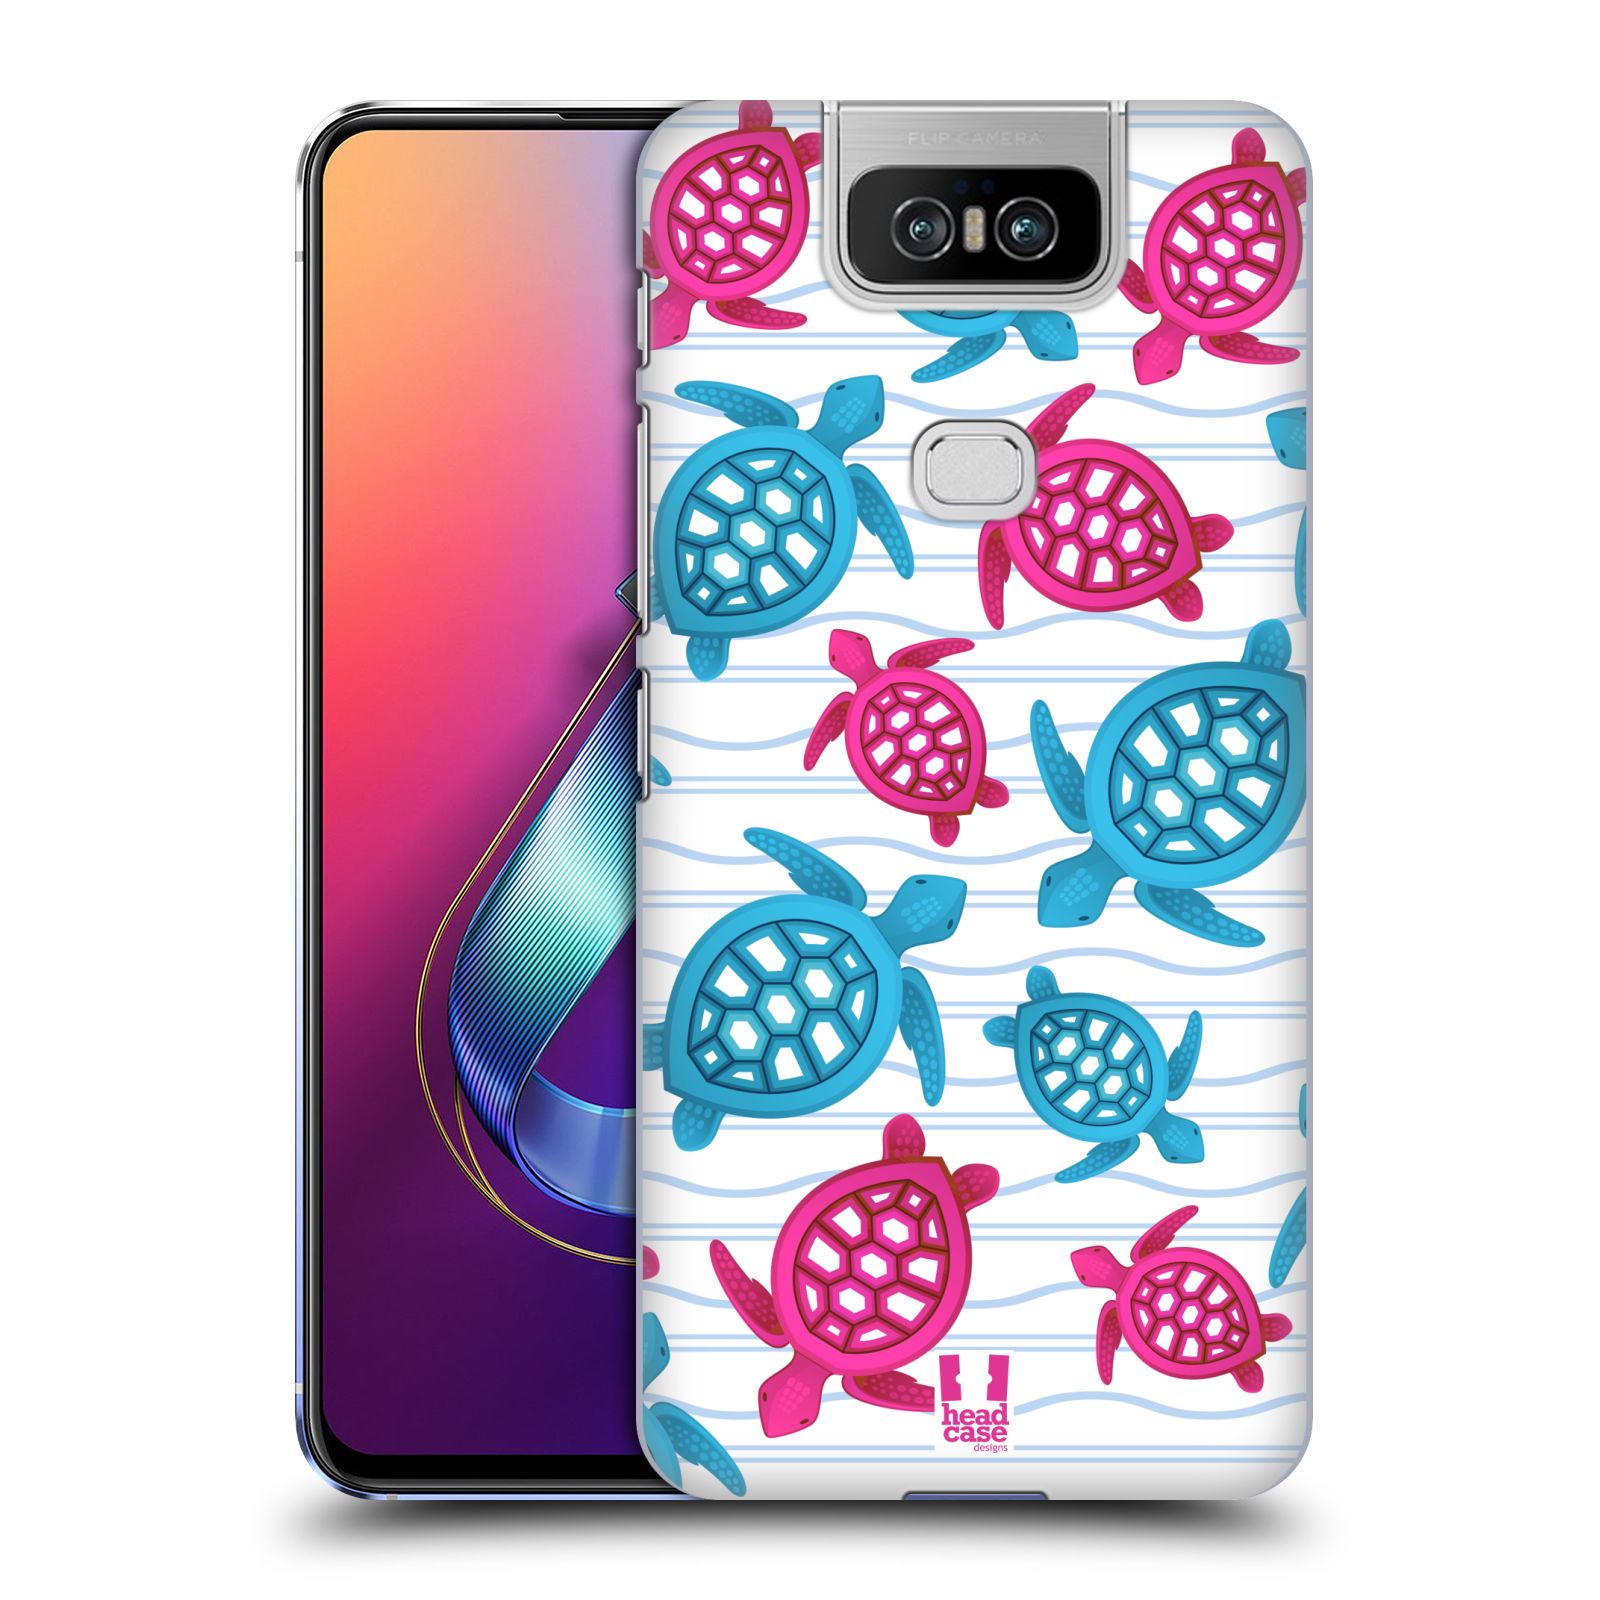 Zadní obal pro mobil Asus Zenfone 6 ZS630KL - HEAD CASE - kreslený mořský vzor želvičky